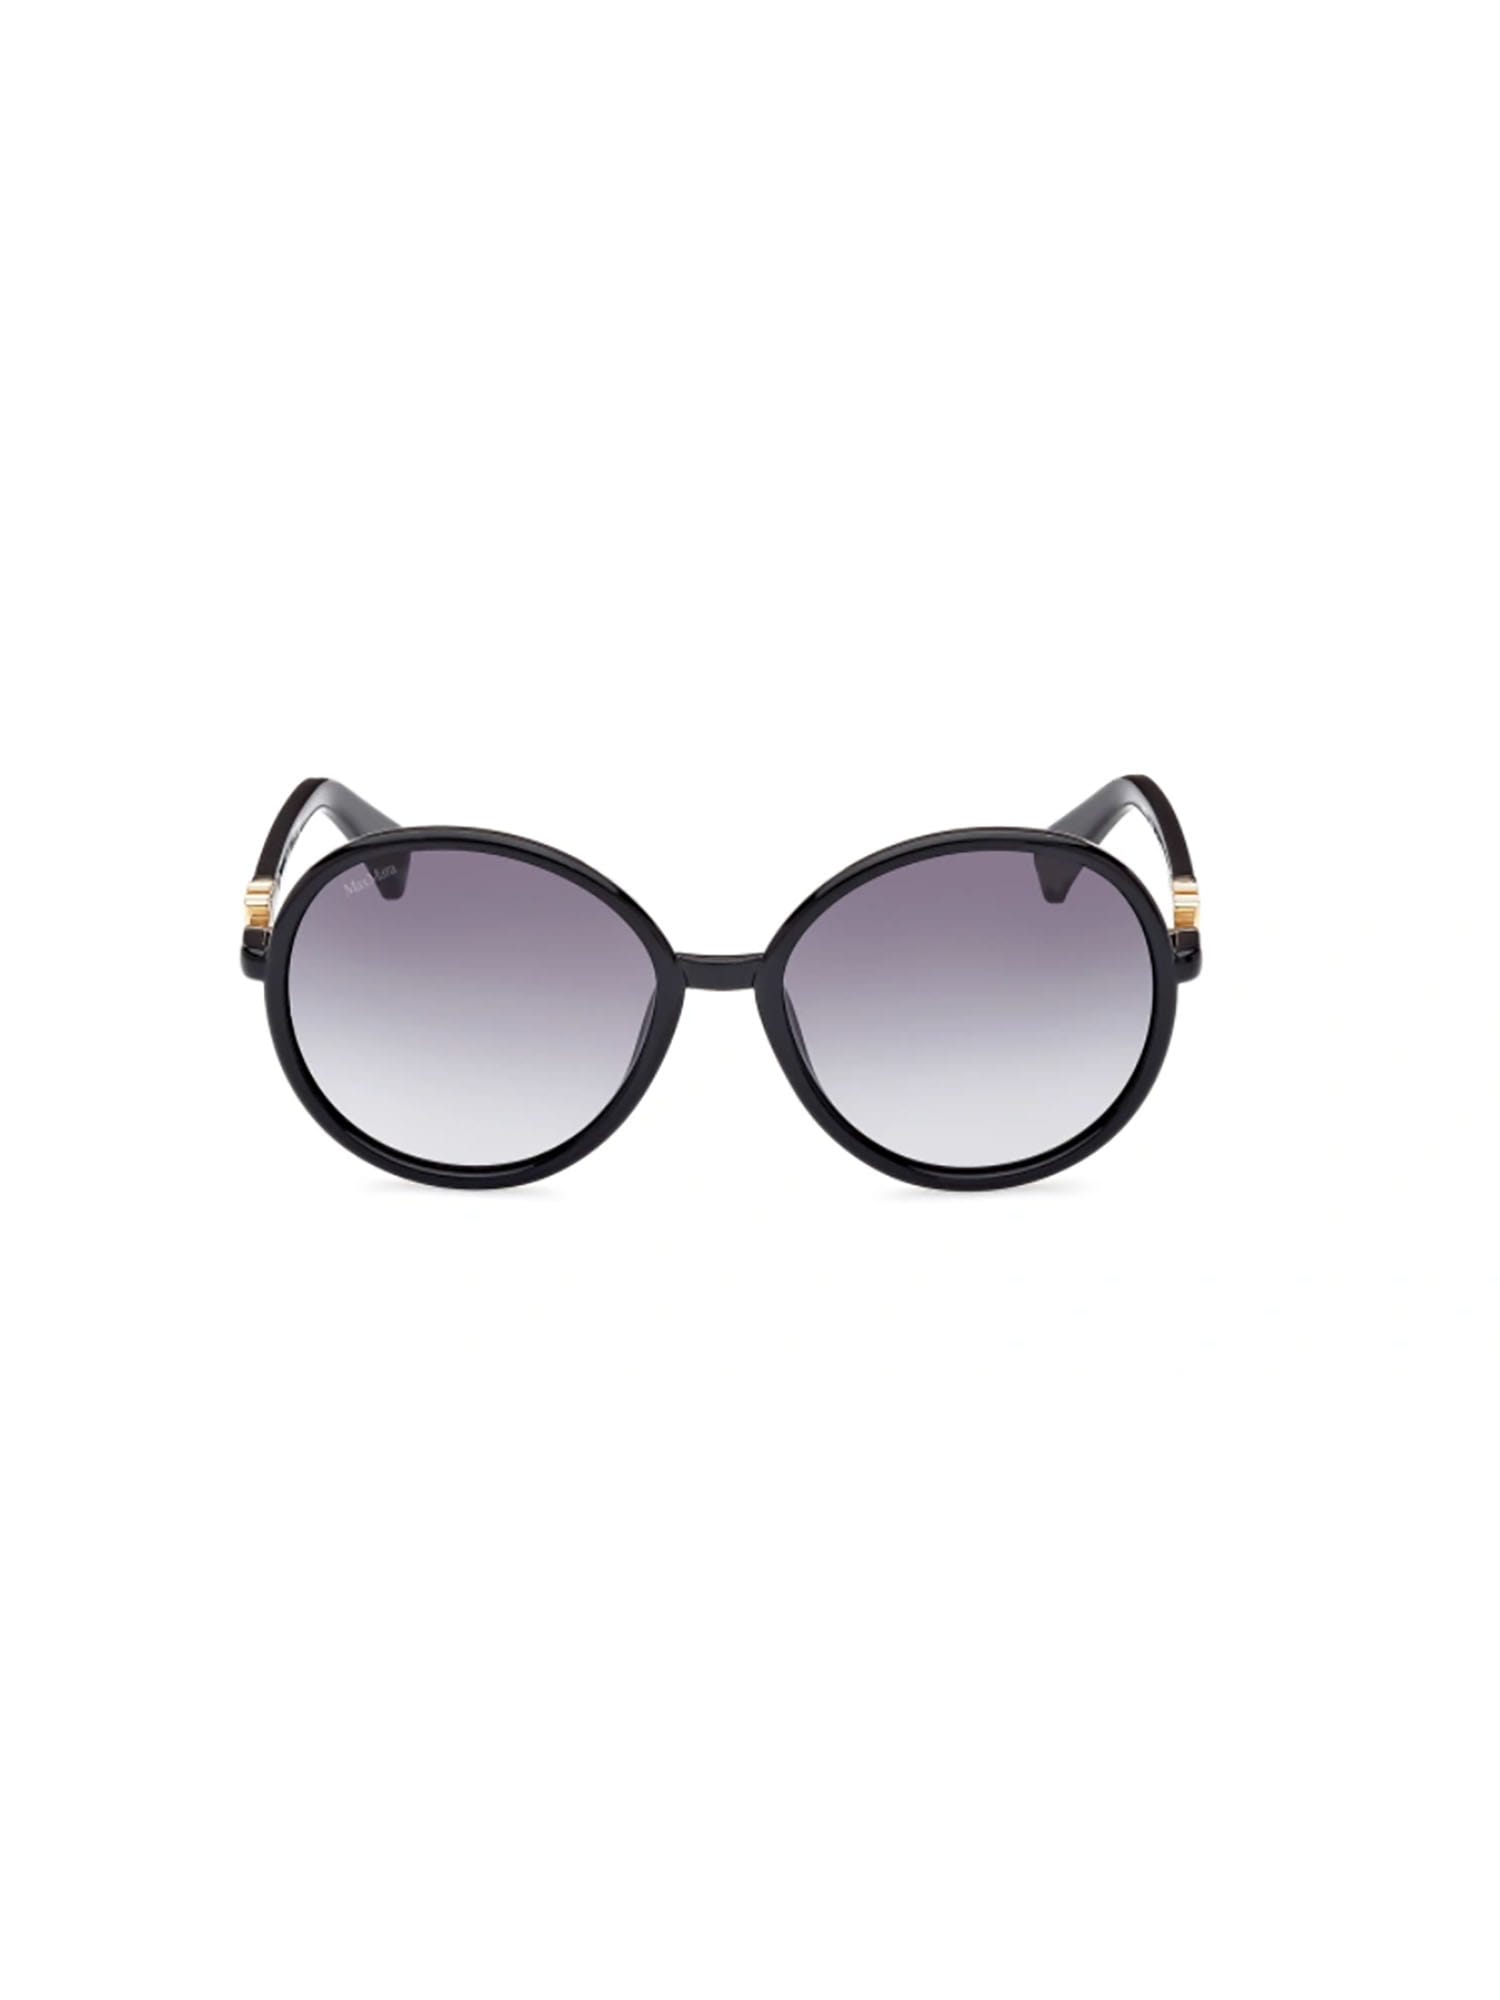 MM0065 Sunglasses